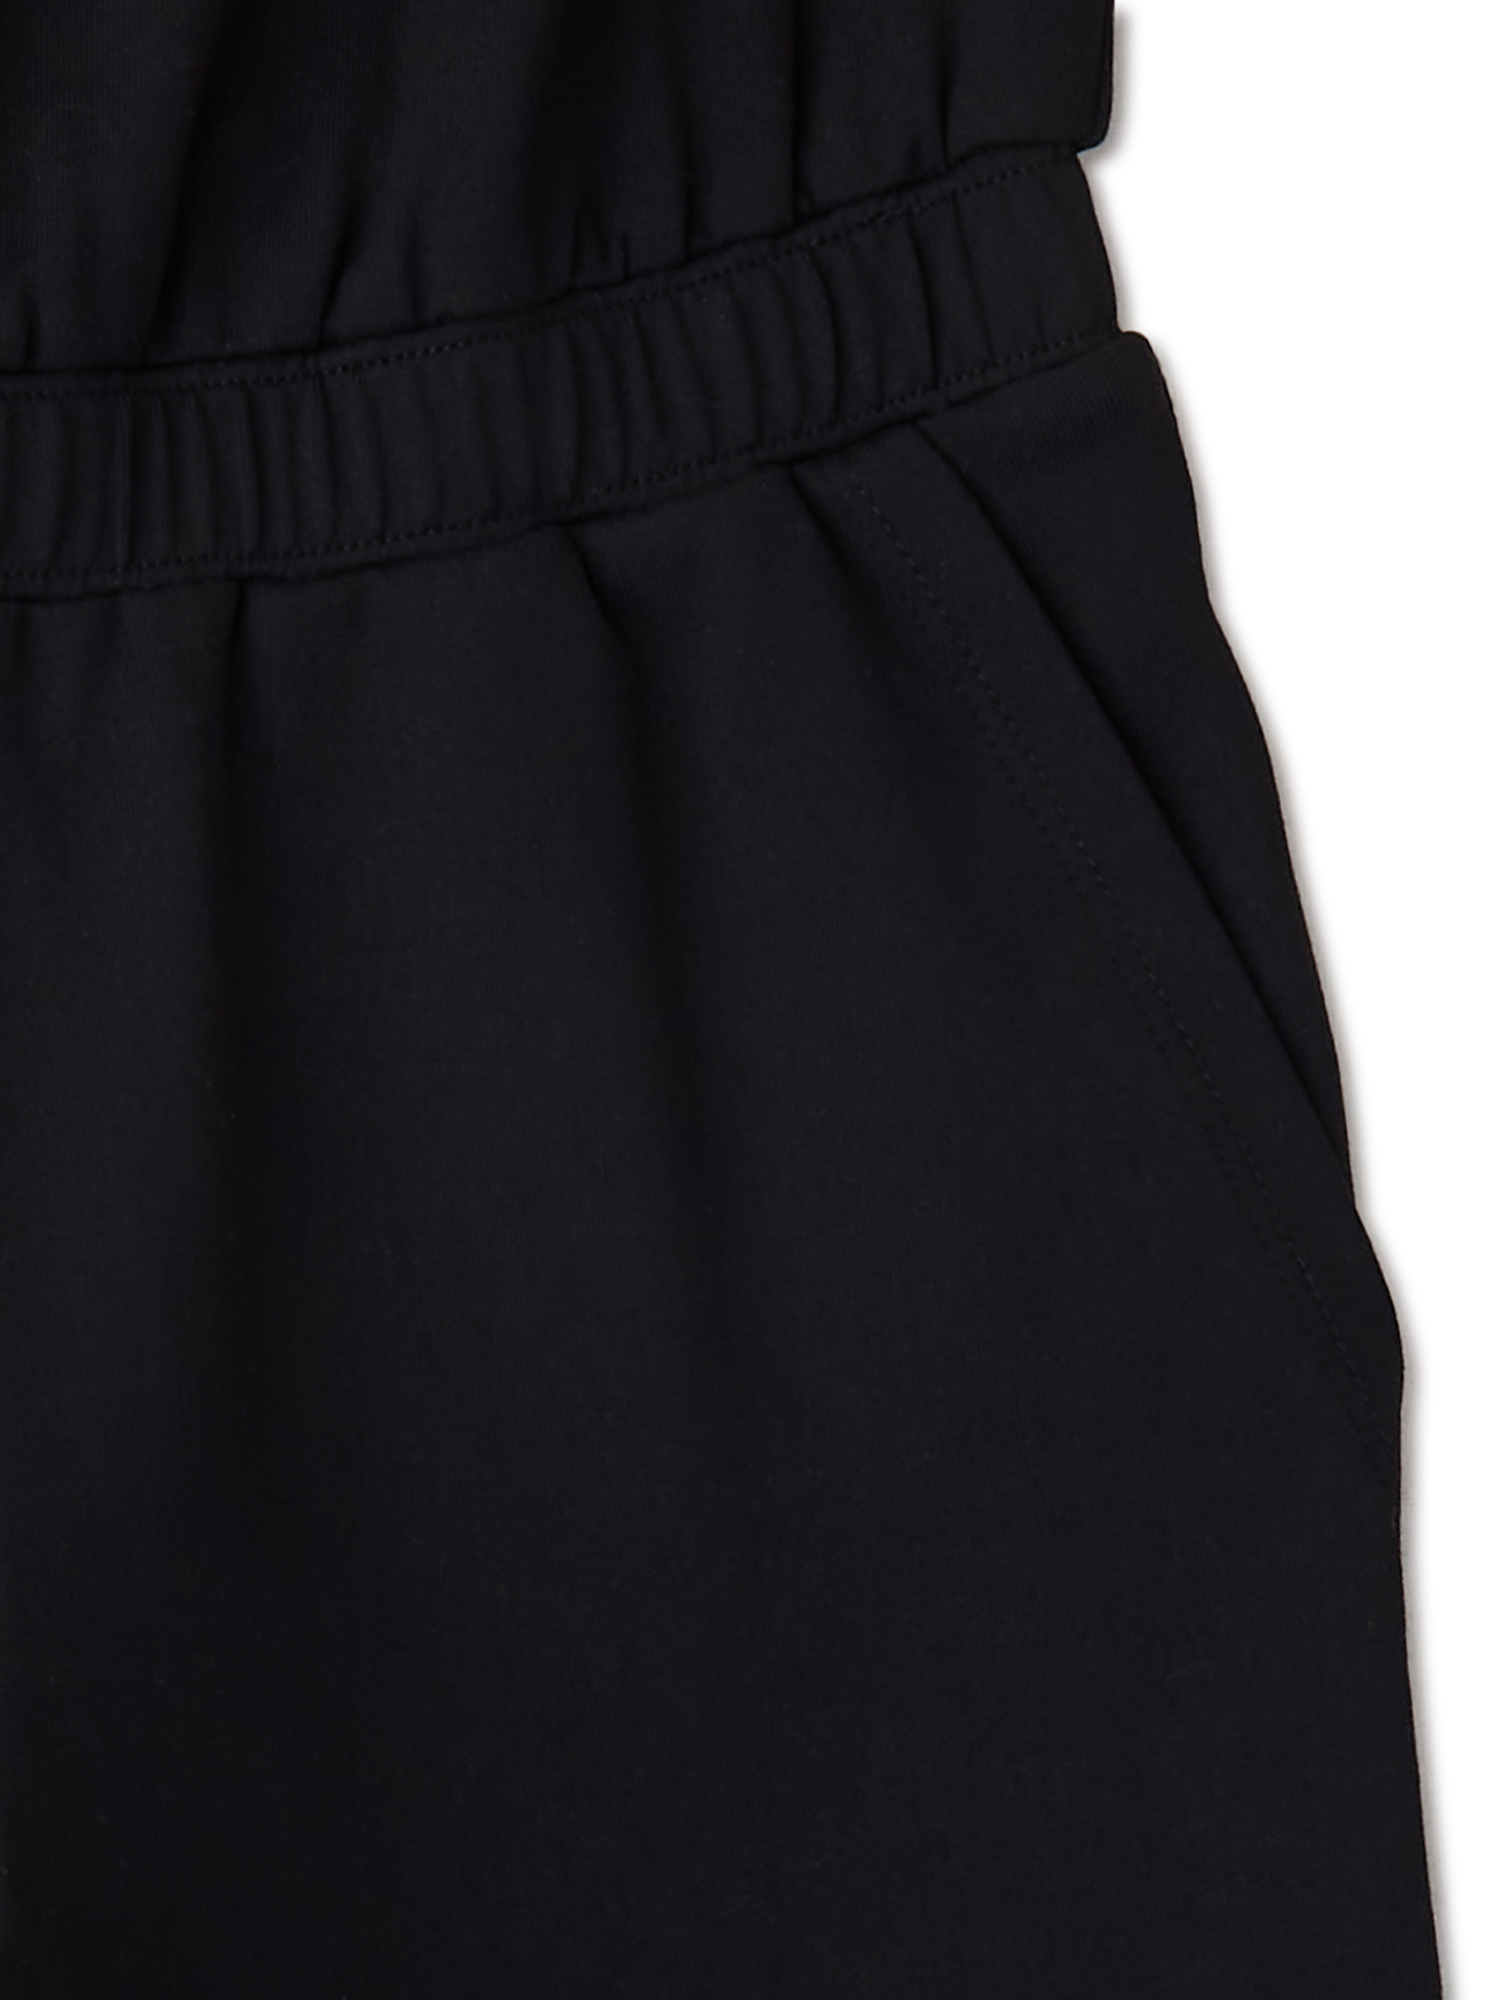 Avia Girls Black Sleeveless Active Jumpsuit, Sizes 4-18 & Plus - image 3 of 3